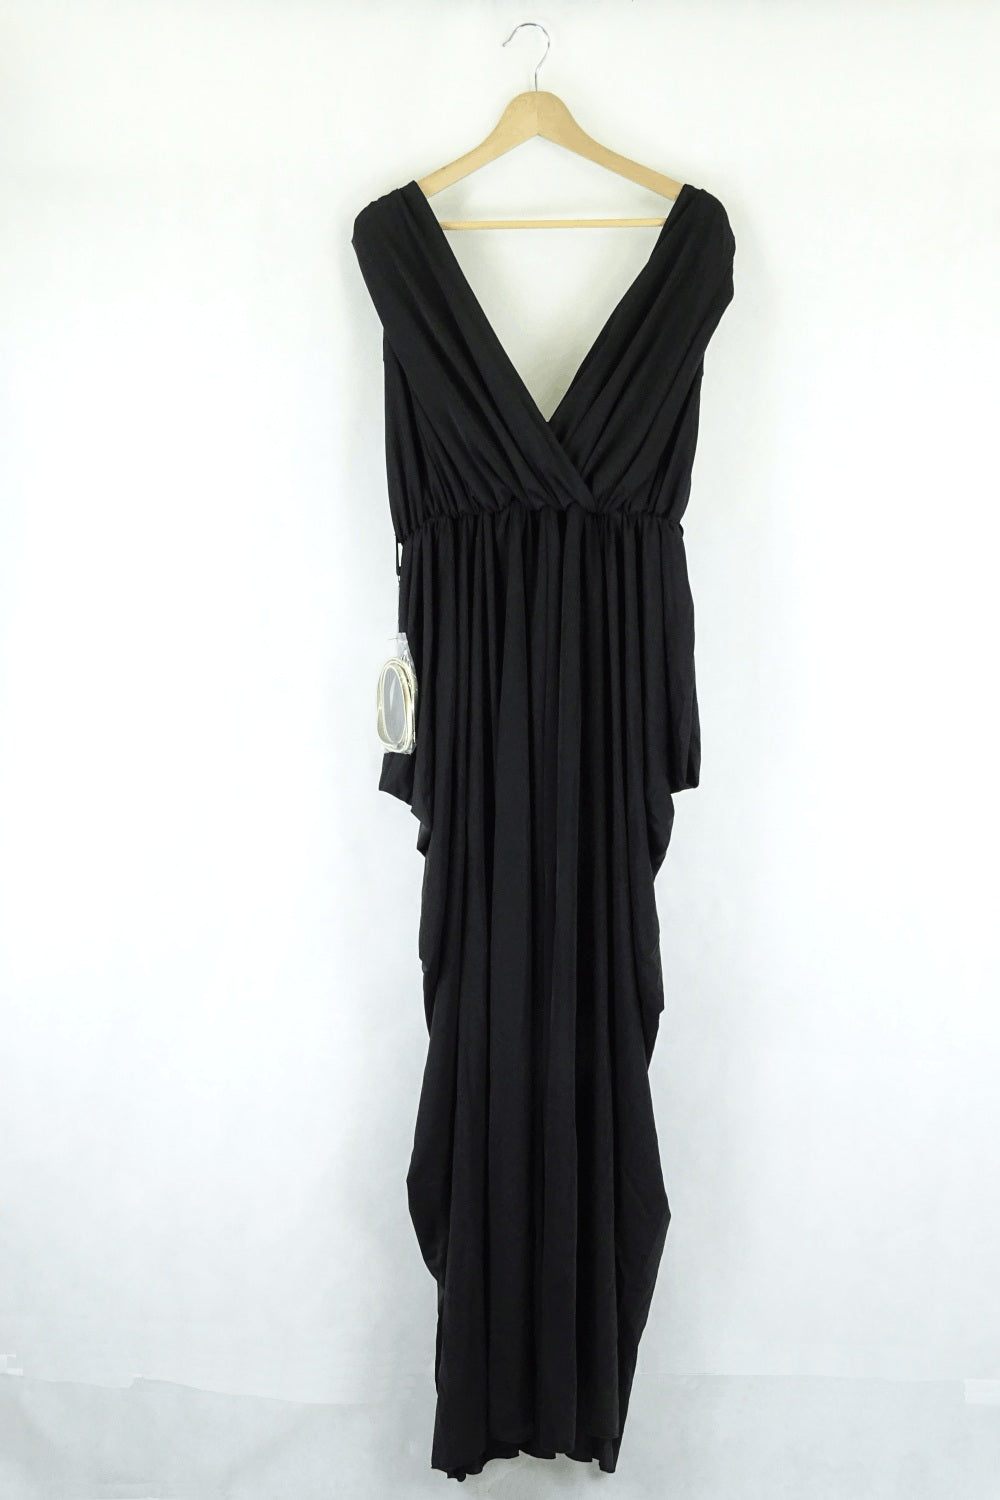 City Chic Black Maxi Drape Dress S ( RRP $199.95)